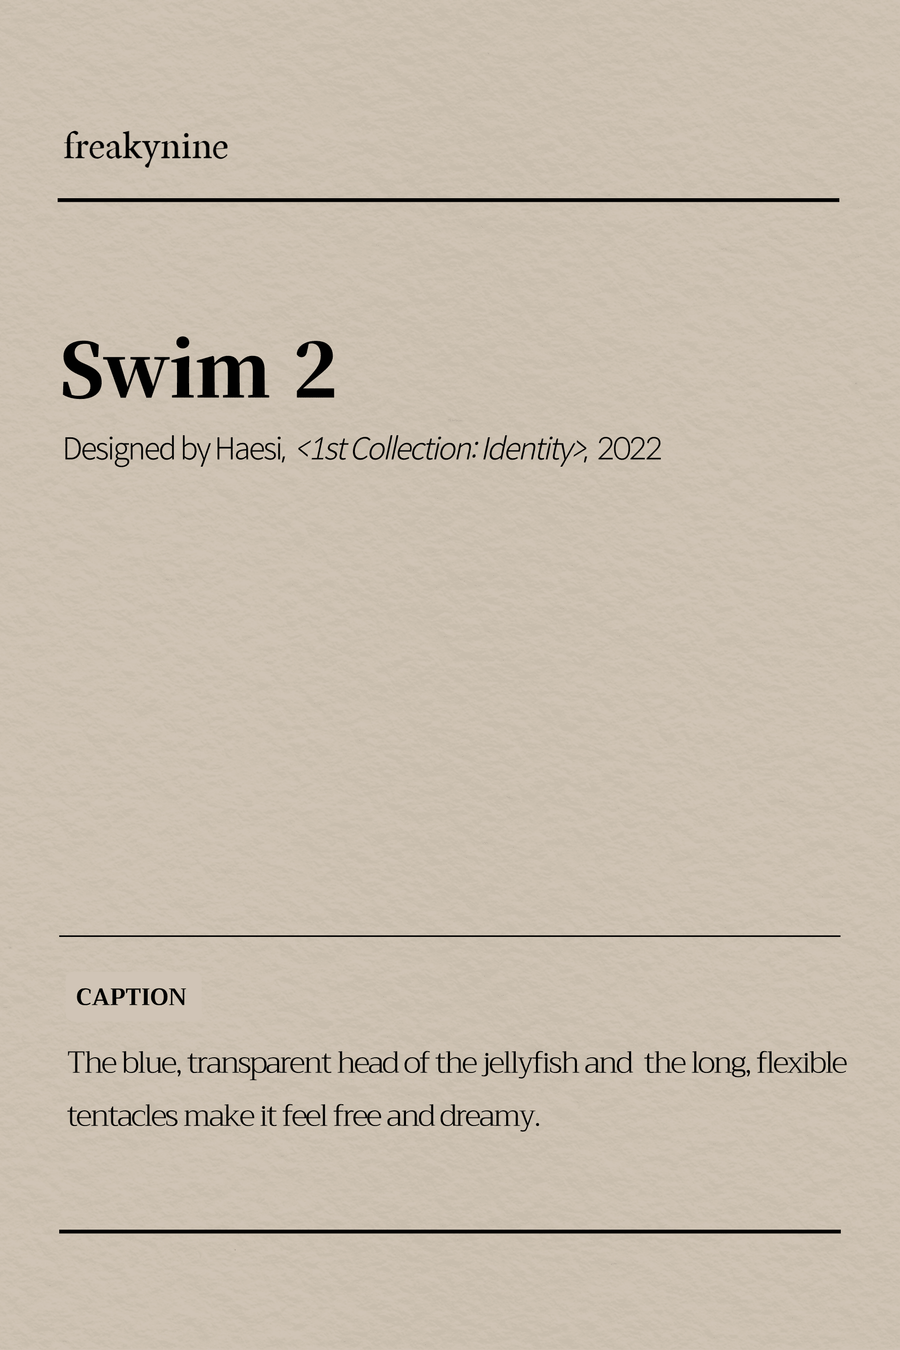 (Haesi) Swim 2 (2EA) - freakynine